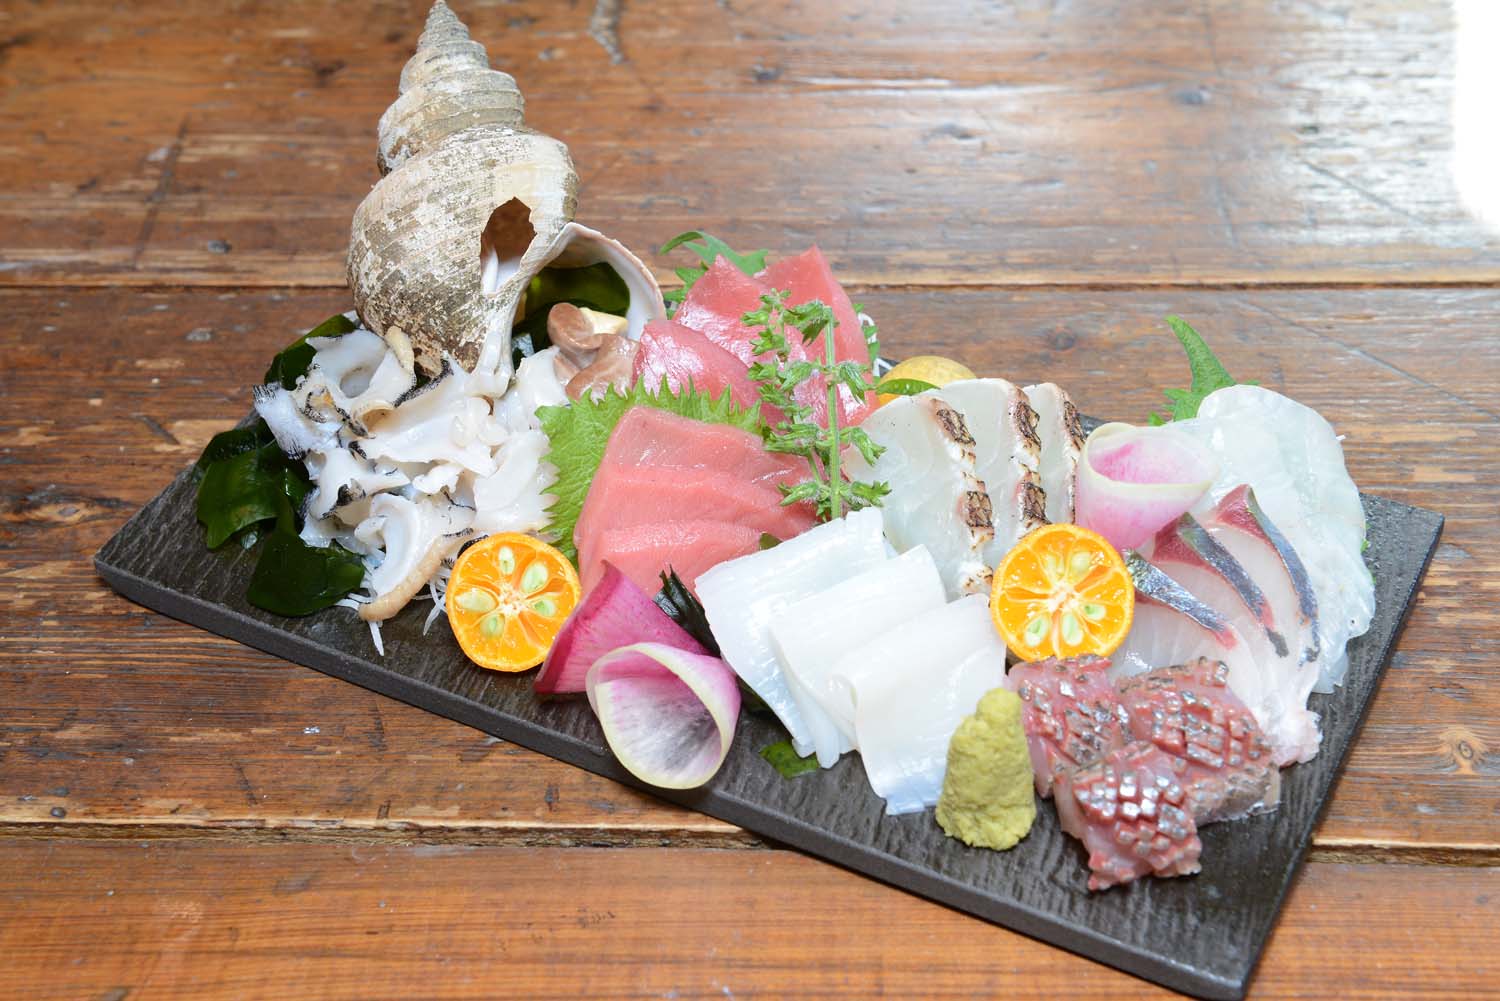 「刺身盛り合わせ」は、その時期に一番おいしい魚介類が食べられると人気だ。